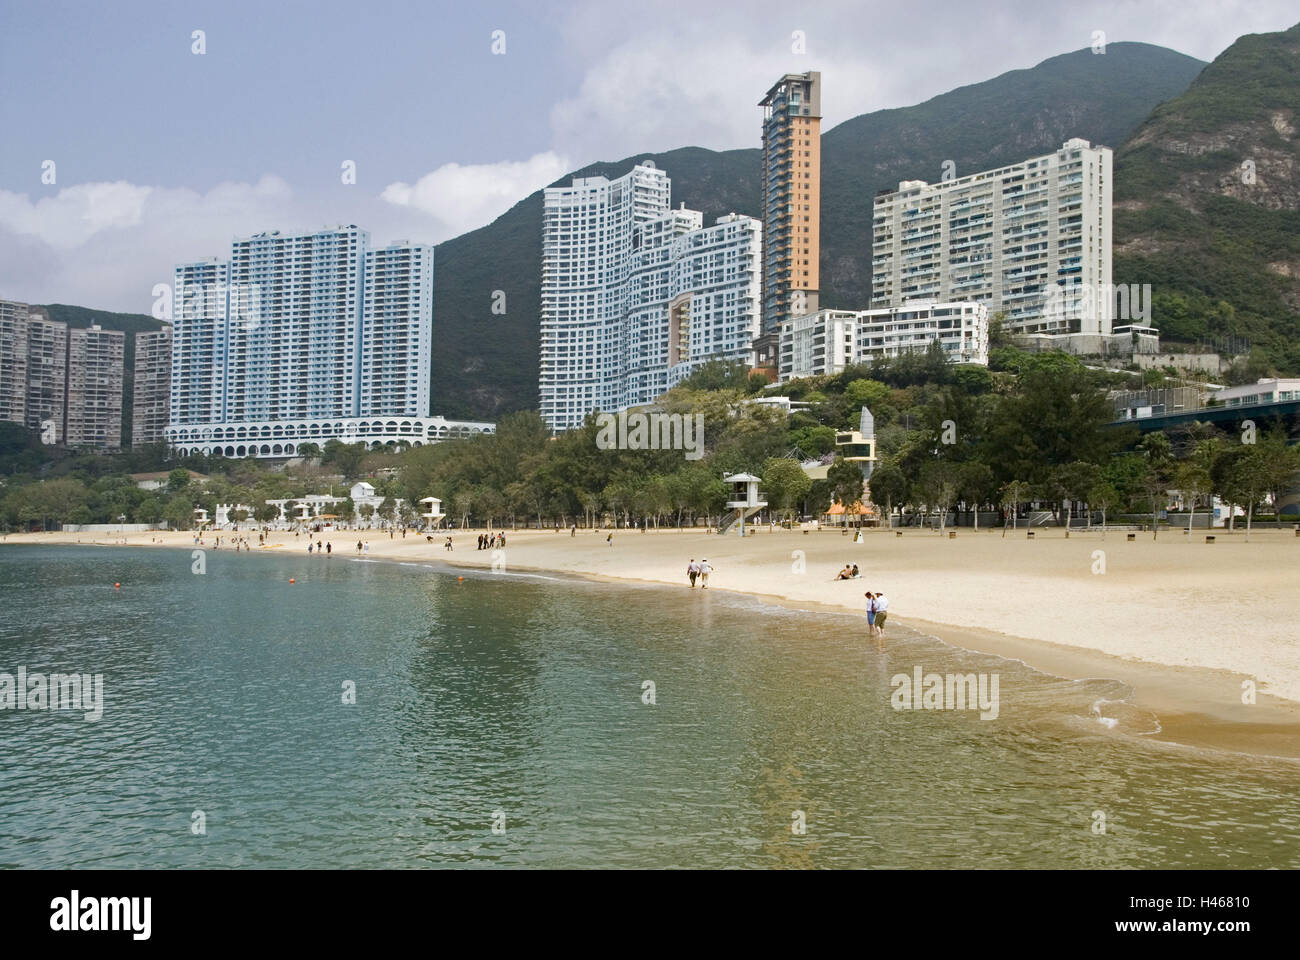 China, Hong Kong, Hong Kong Iceland, Repulse Bay, beach, residential blocks, Stock Photo